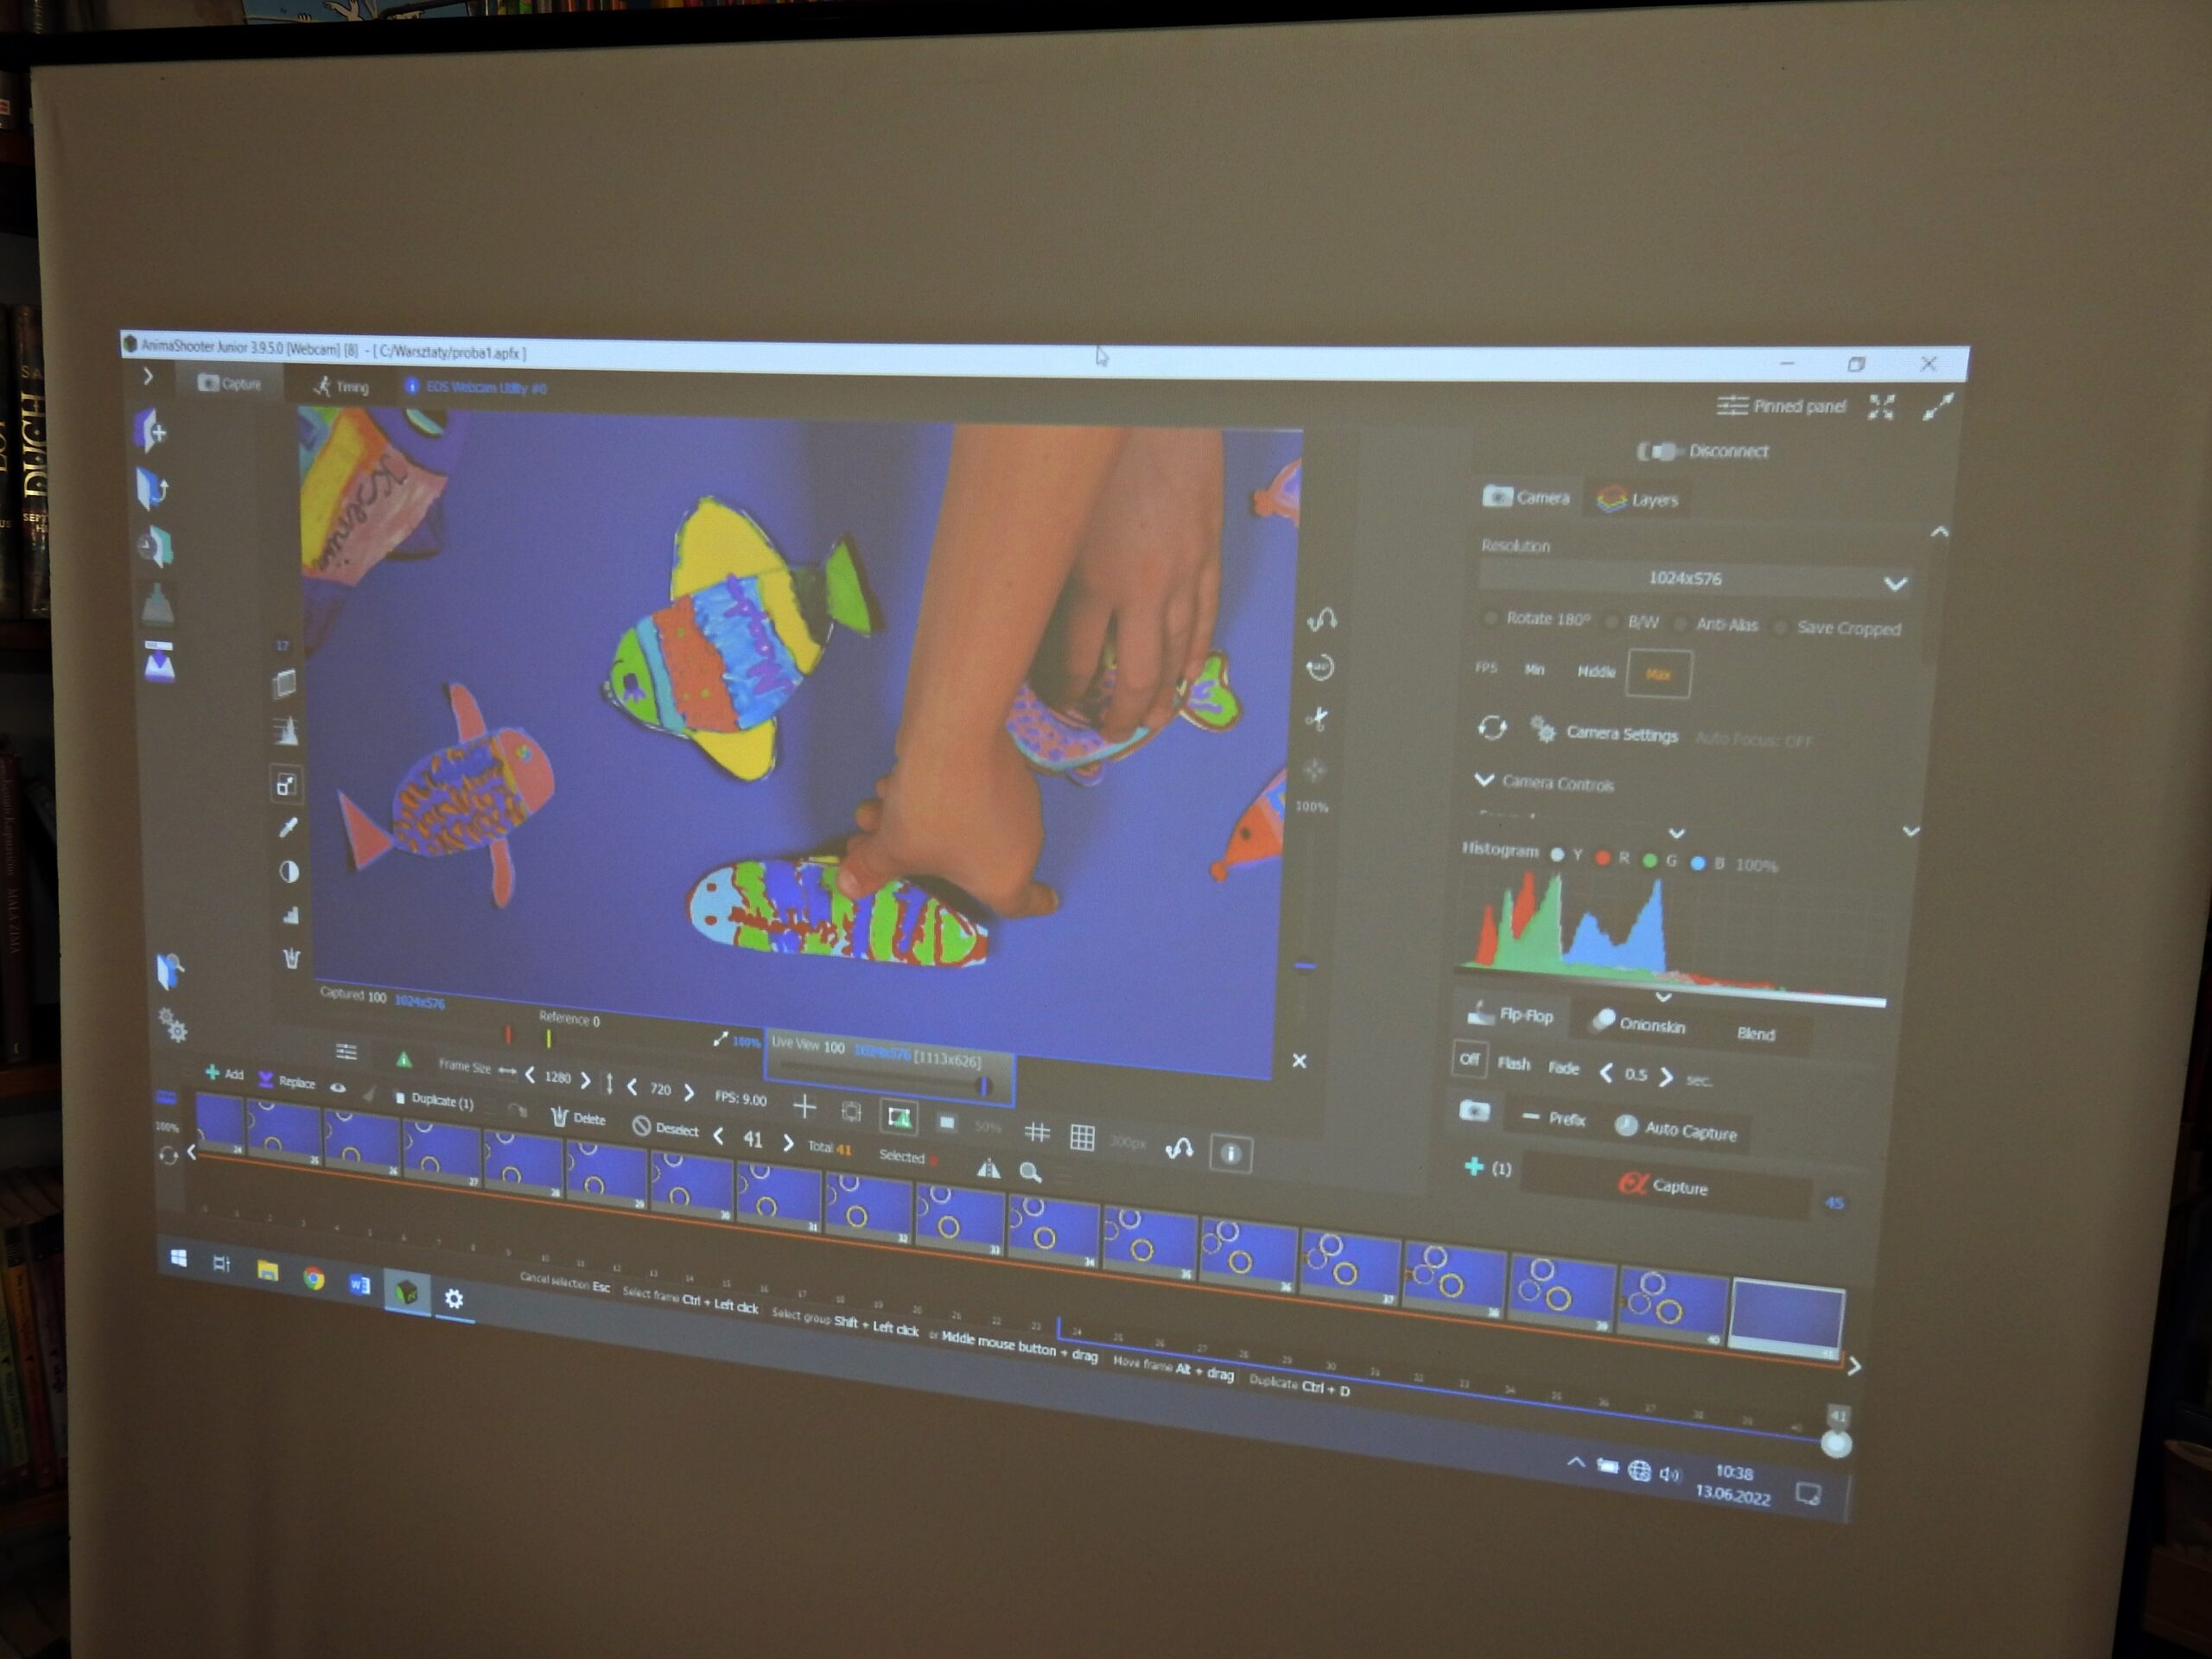 Na zdjęciu jest zrzut ekranu komputerowego. Widać na nim kilka kolorowych rybek na niebieskim tle. Dwie rybki są dotykane przez ręce. Widoczny jest również panel z ustawieniami grafiki.